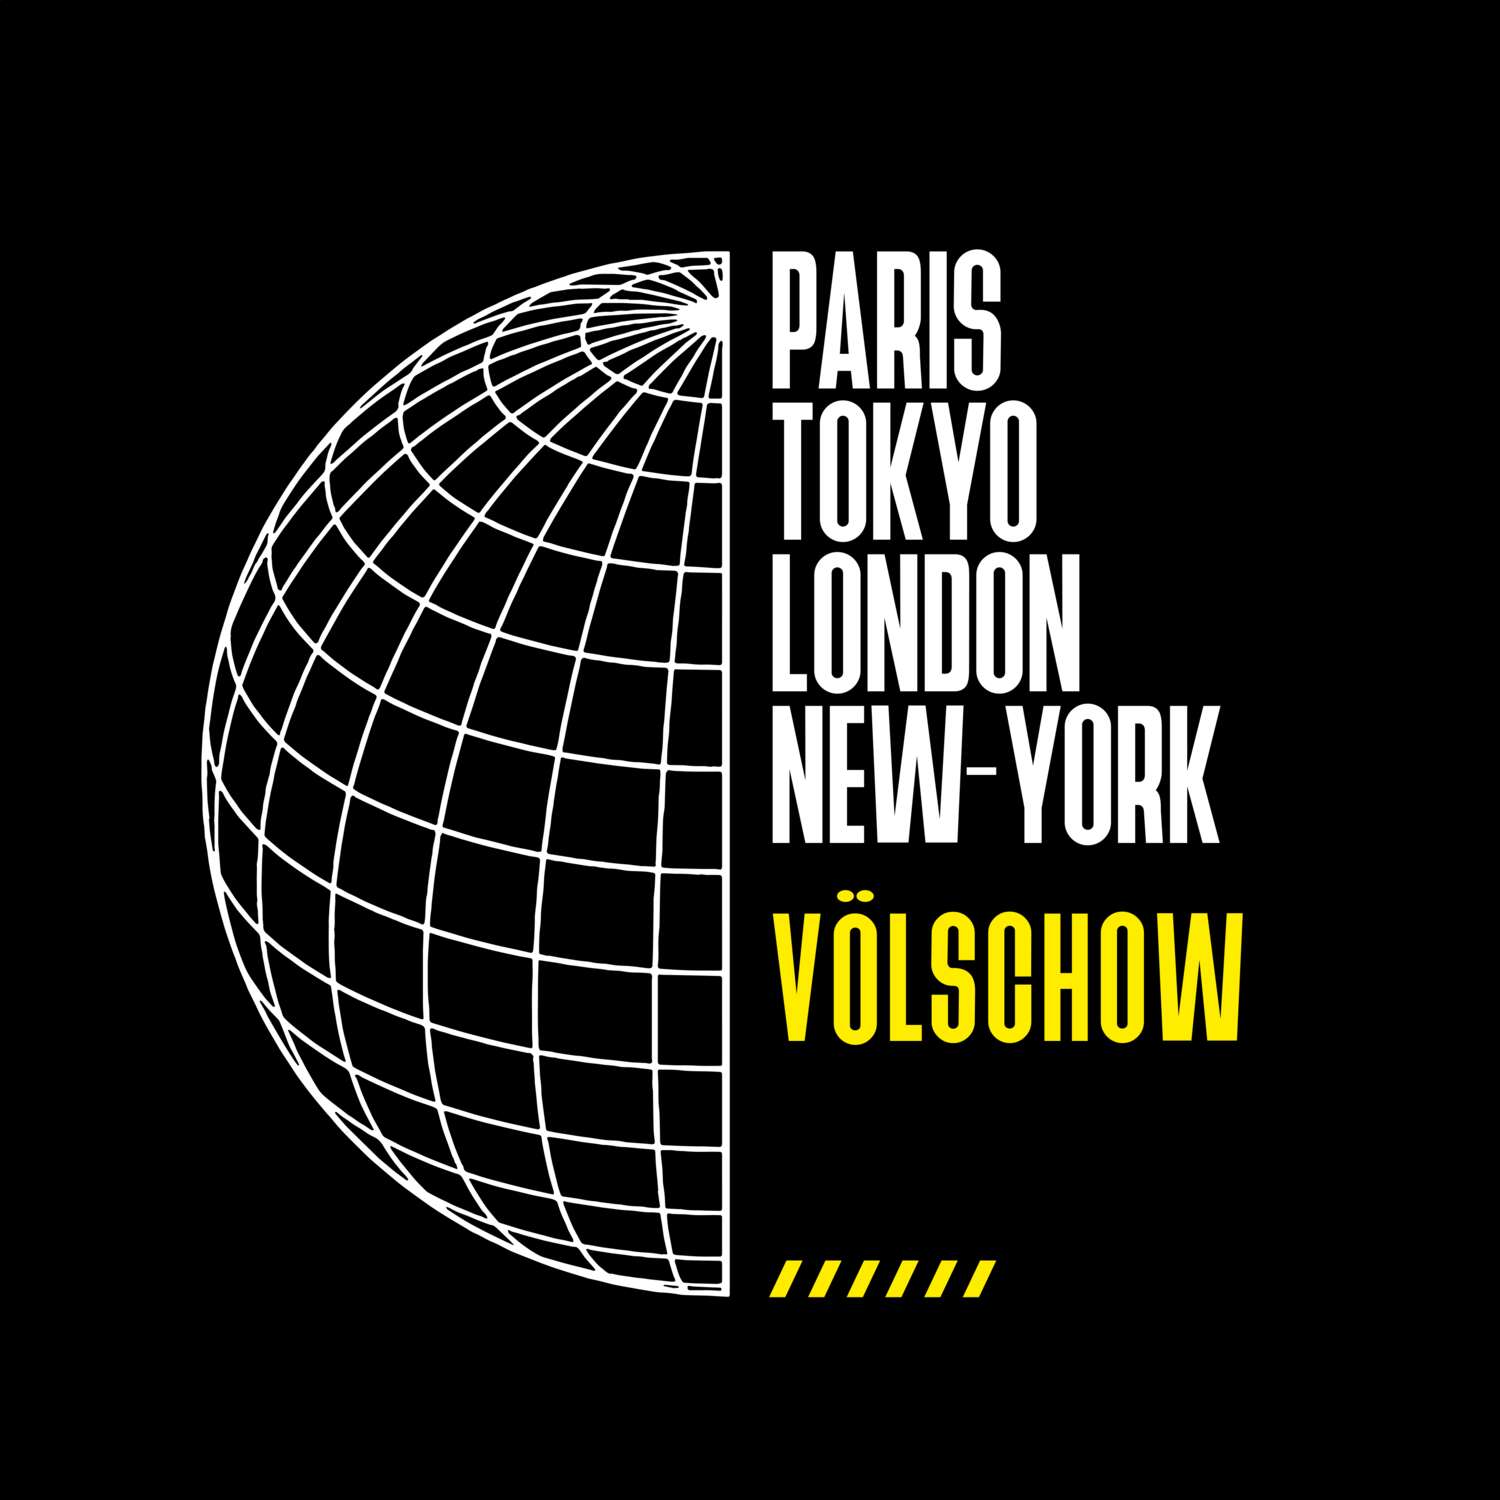 Völschow T-Shirt »Paris Tokyo London«